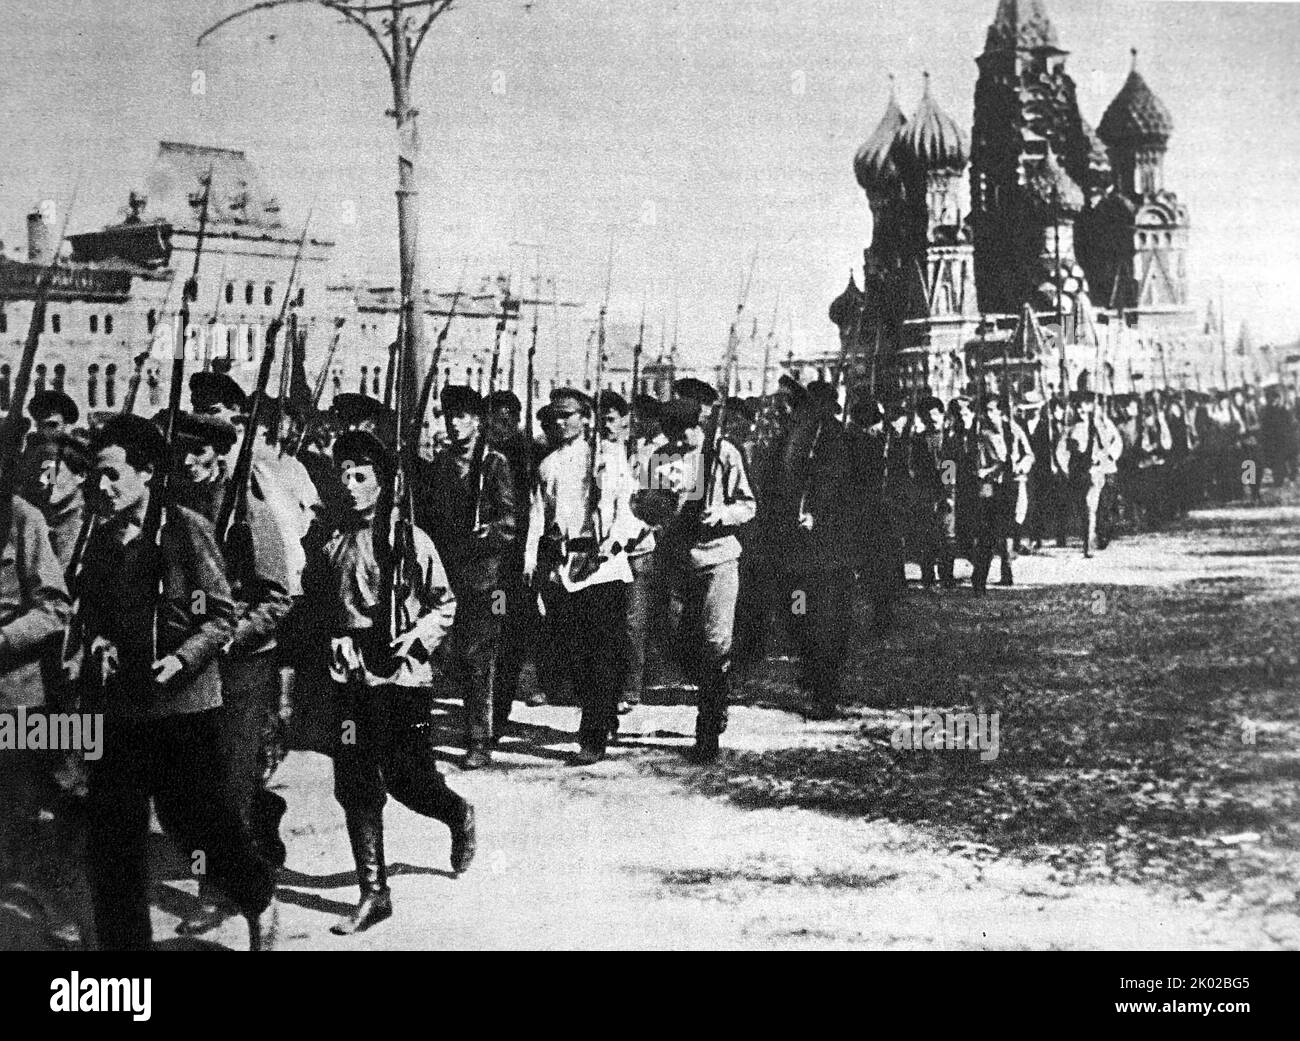 Défilé d'unités d'entraînement militaire de base sur la place Rouge. Moscou. 25 mai 1918. Photo de G. Goldstein. Banque D'Images